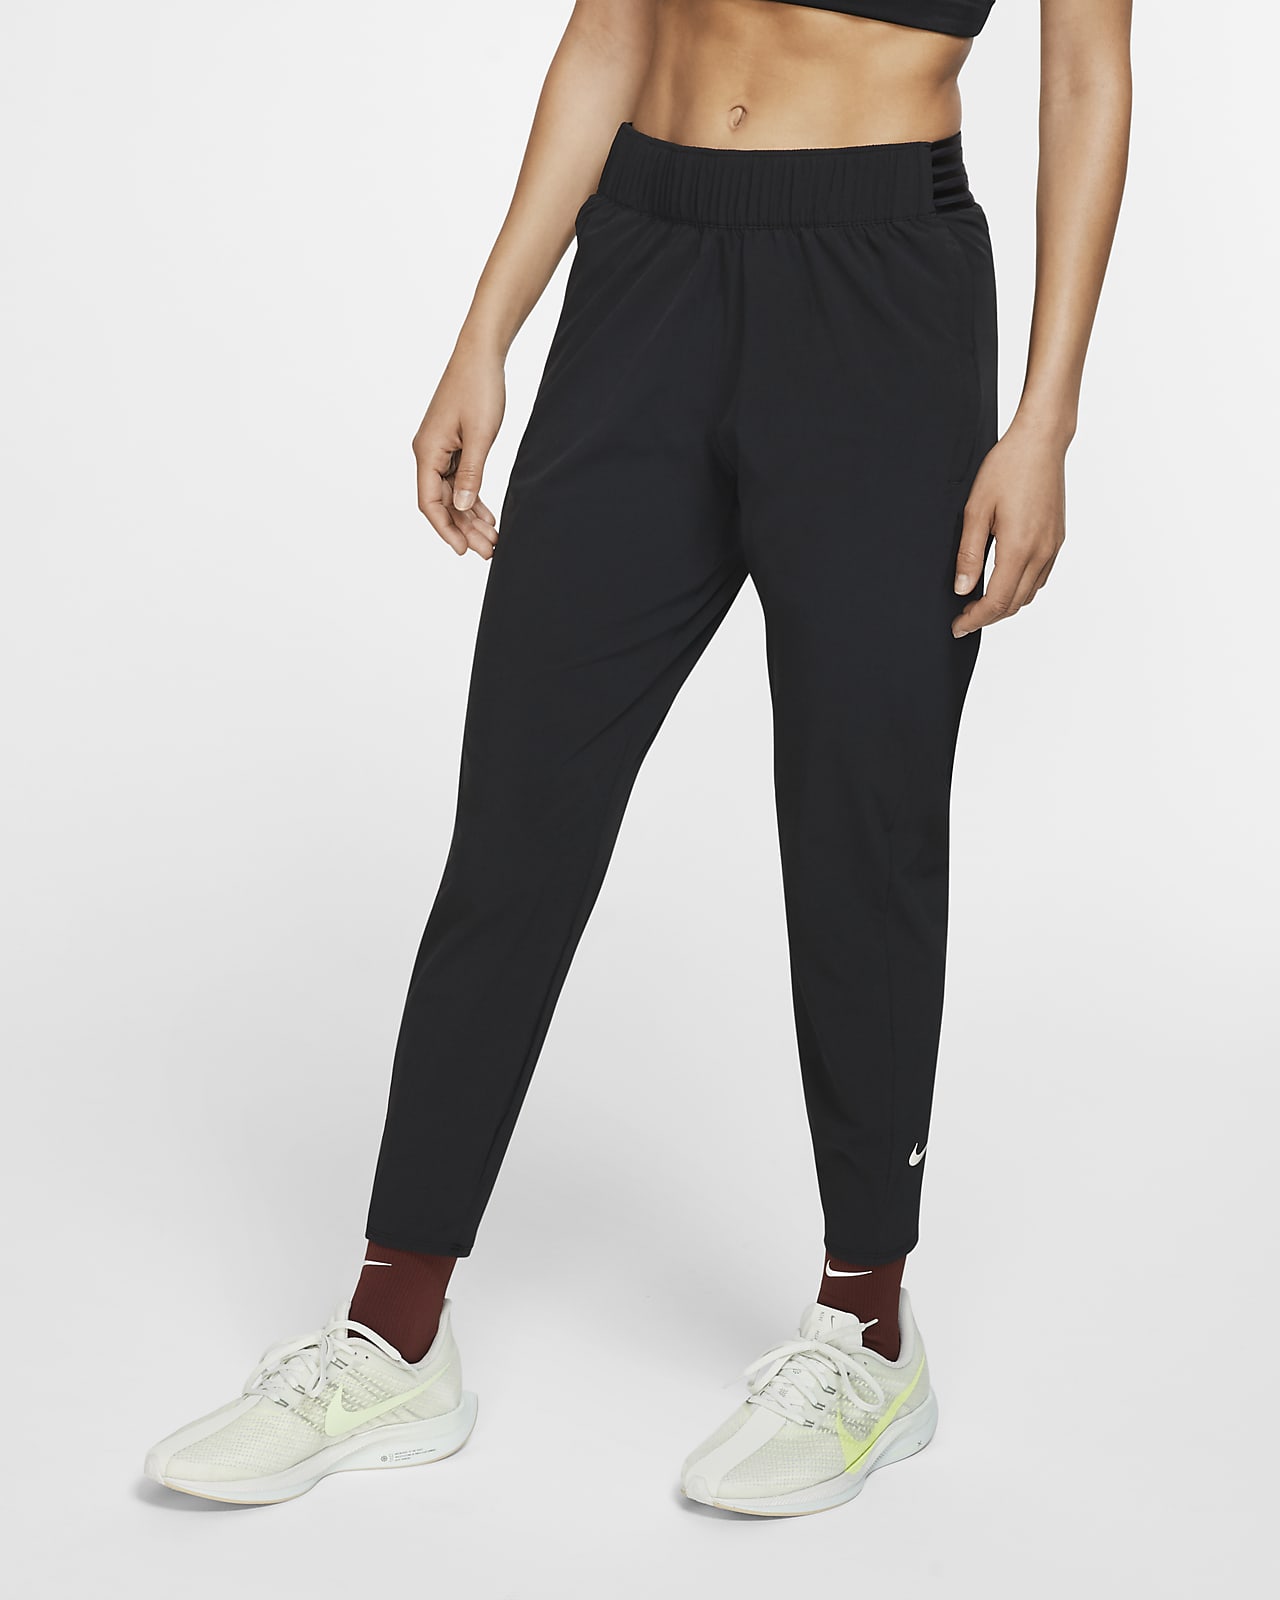 Pantalon de running 7/8 Nike Essential pour femme